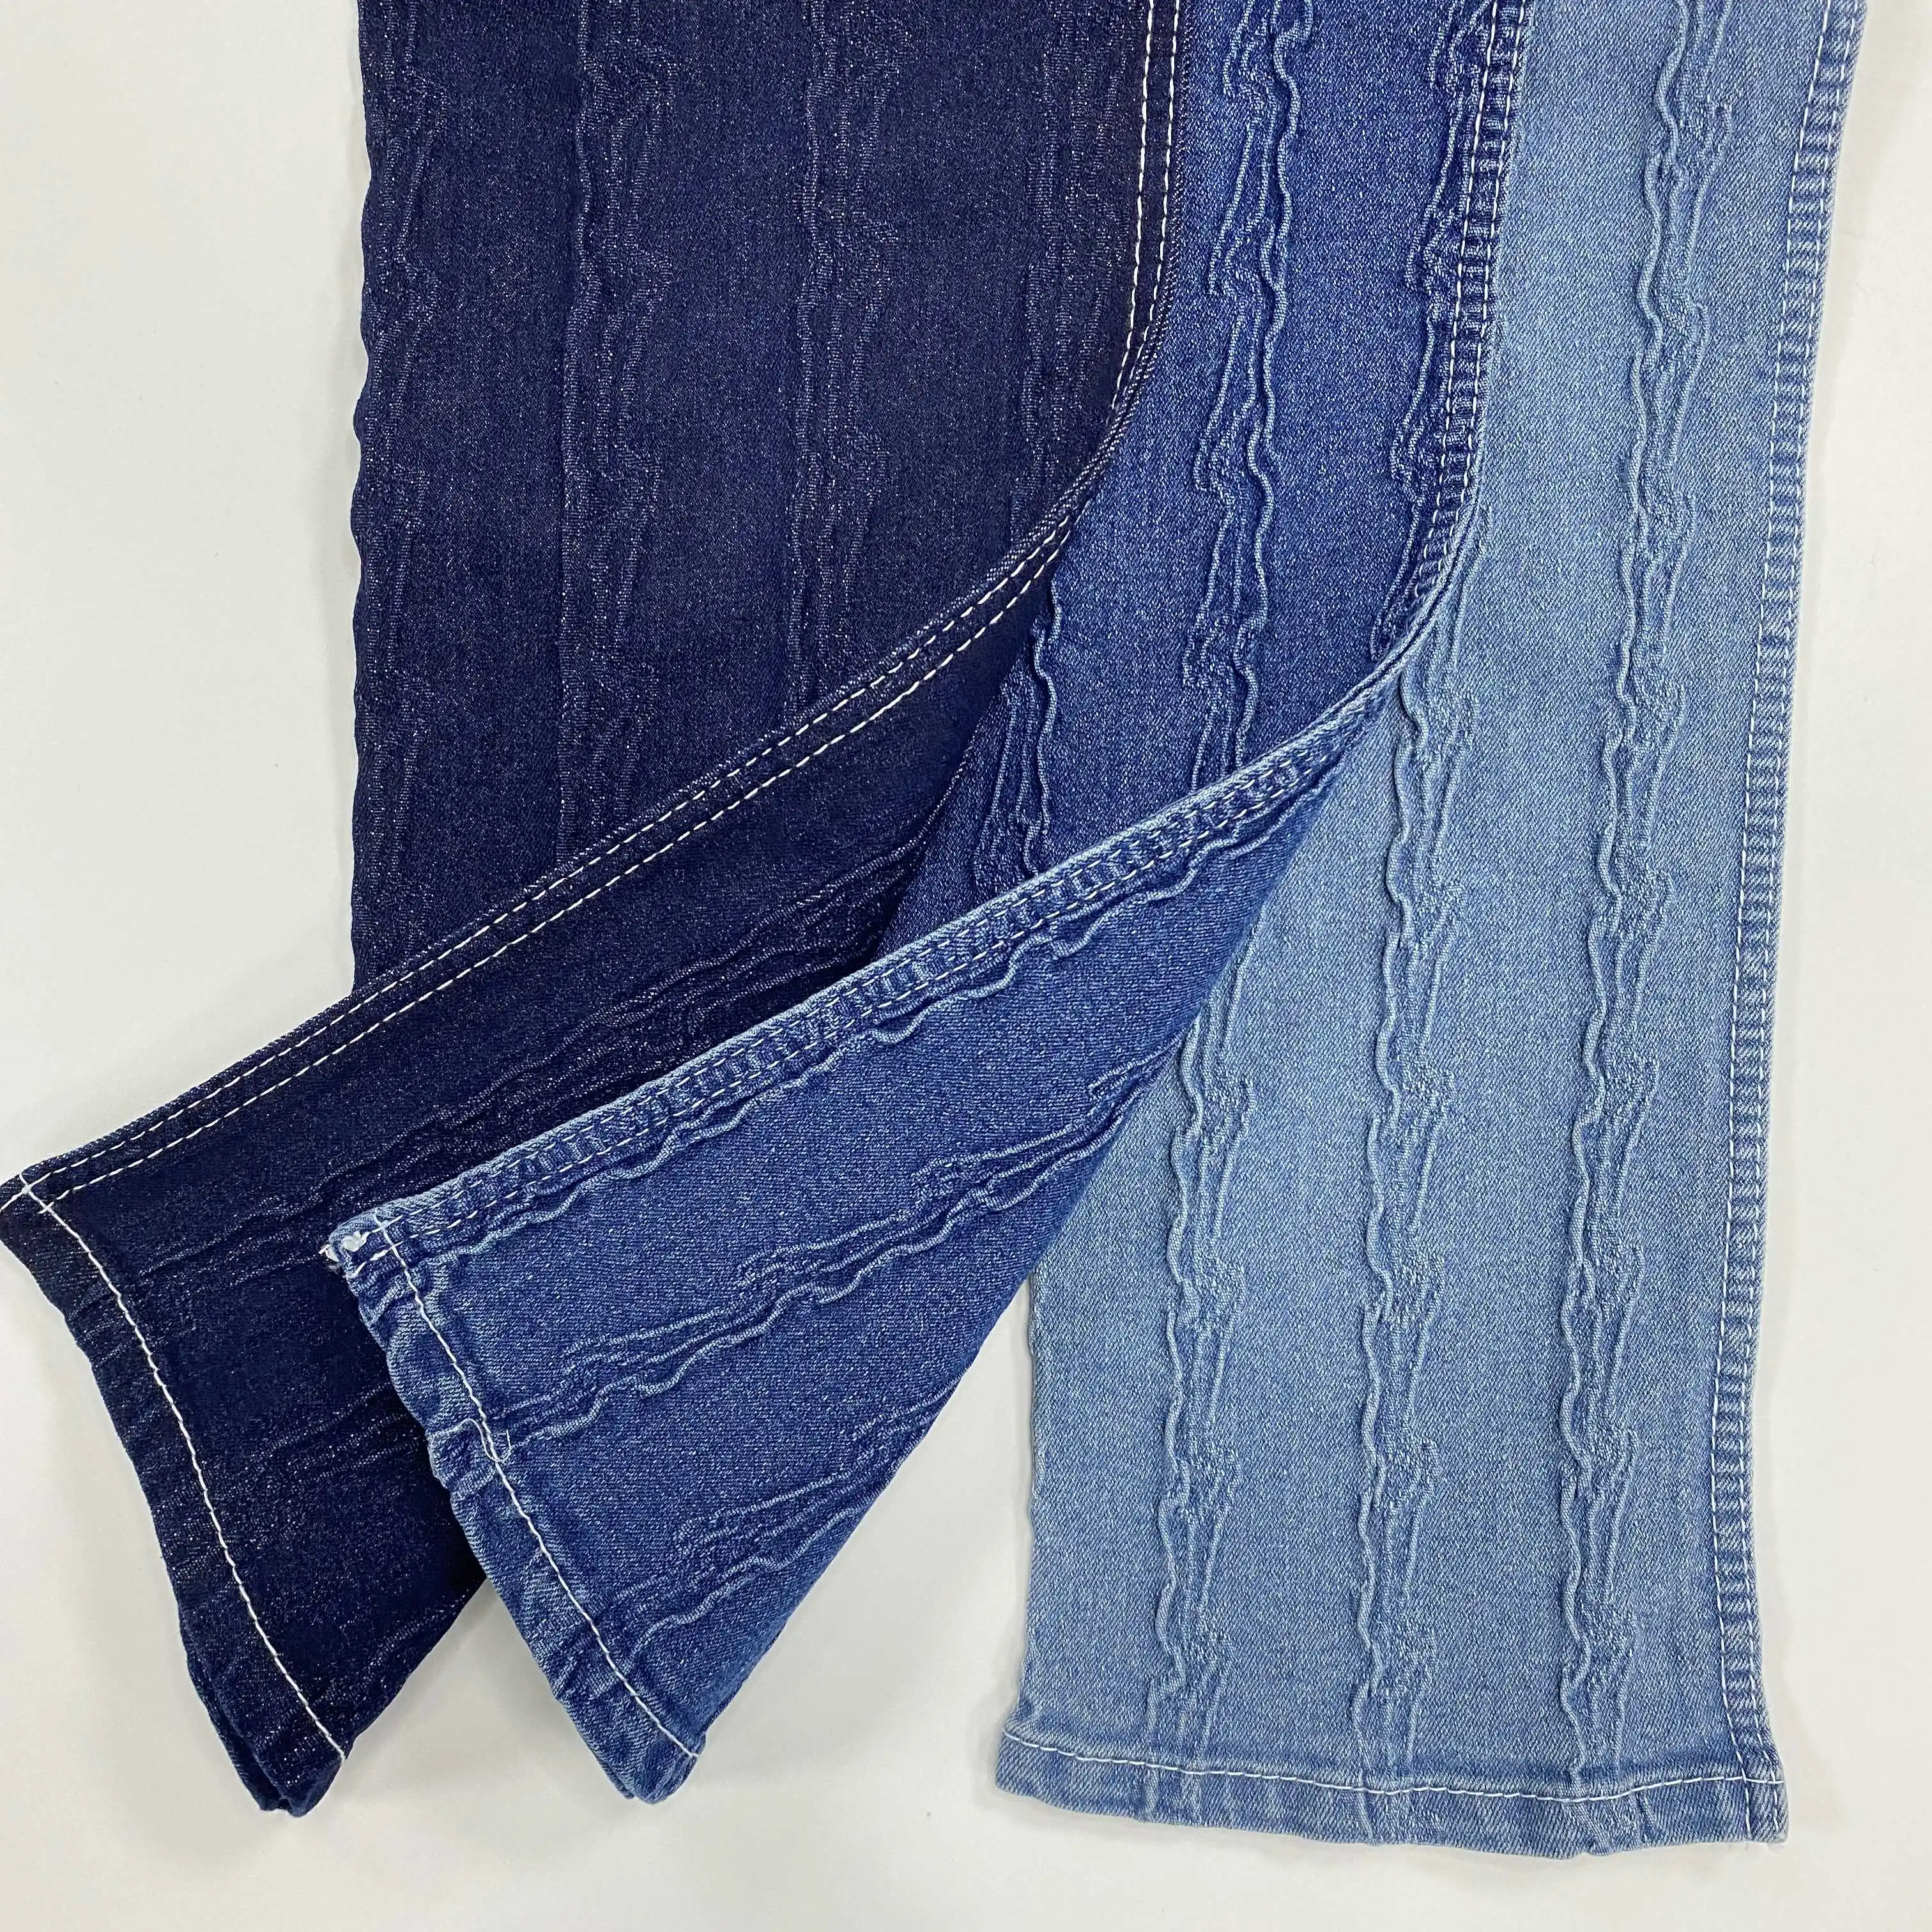 Men jeans elastic slub cotton stretch denim fabric textile for wrangler jeans wholesale